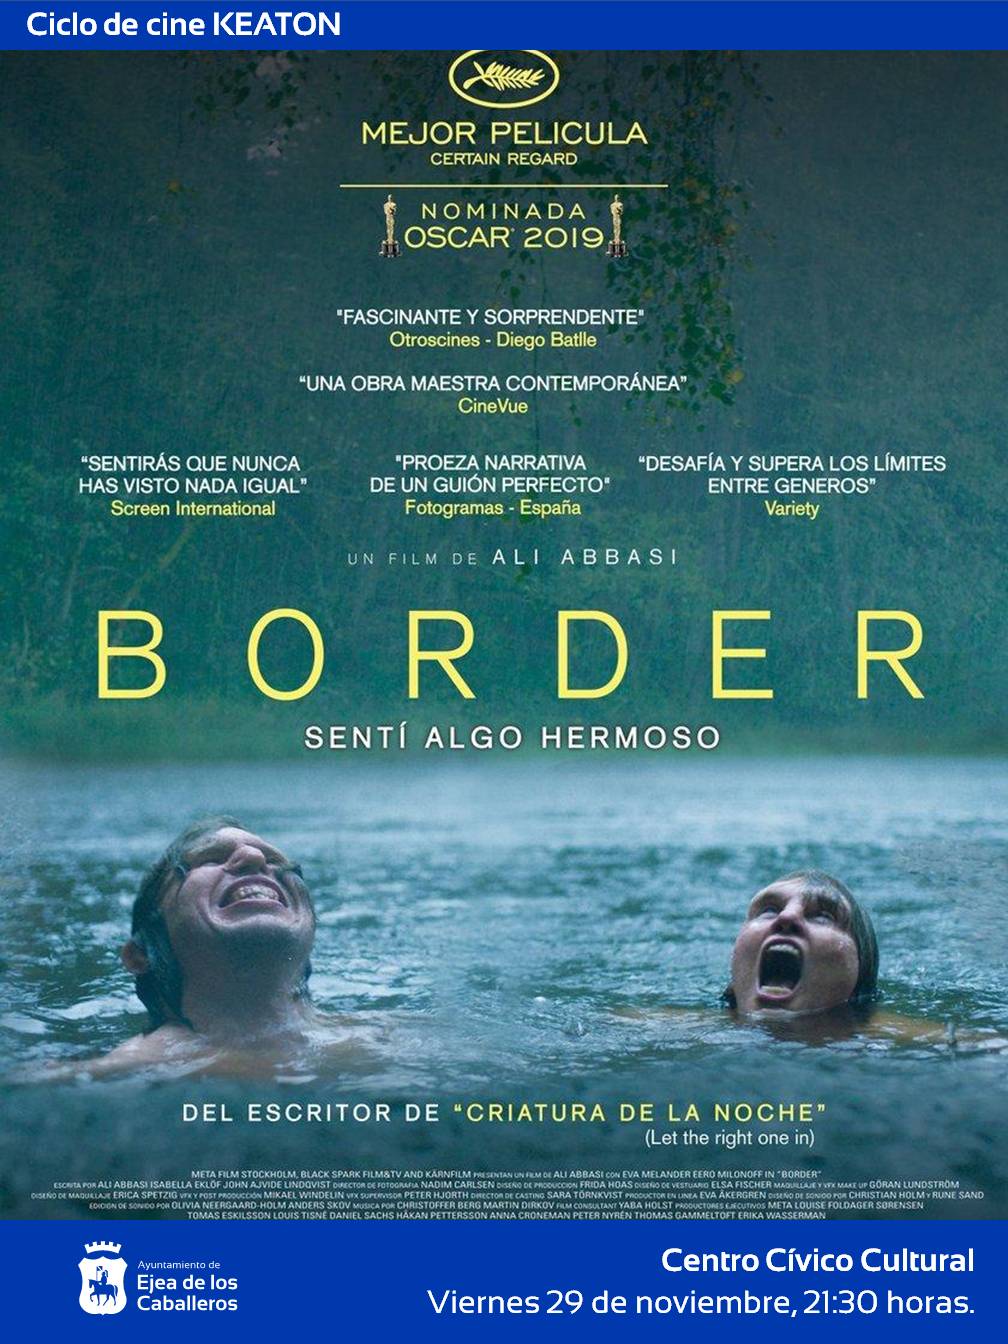 En este momento estás viendo Cine Keaton: “Border”, una película de cine fantástico que reflexiona sobre la identidad y el miedo a la diferencia